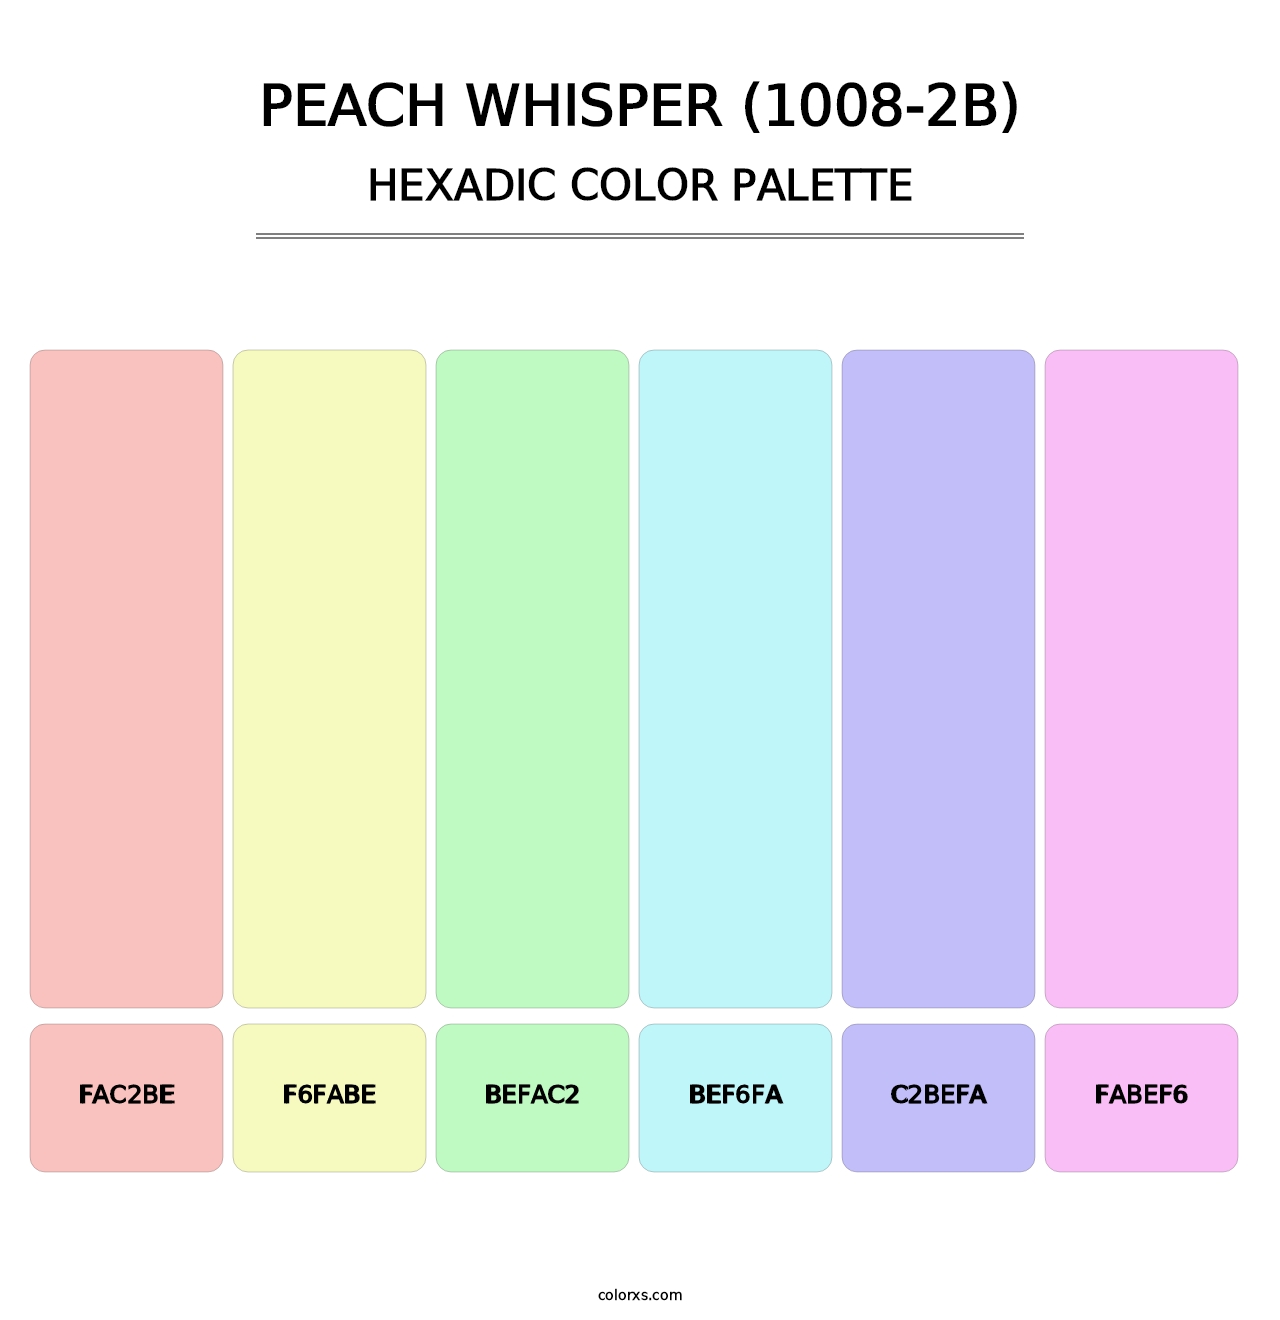 Peach Whisper (1008-2B) - Hexadic Color Palette